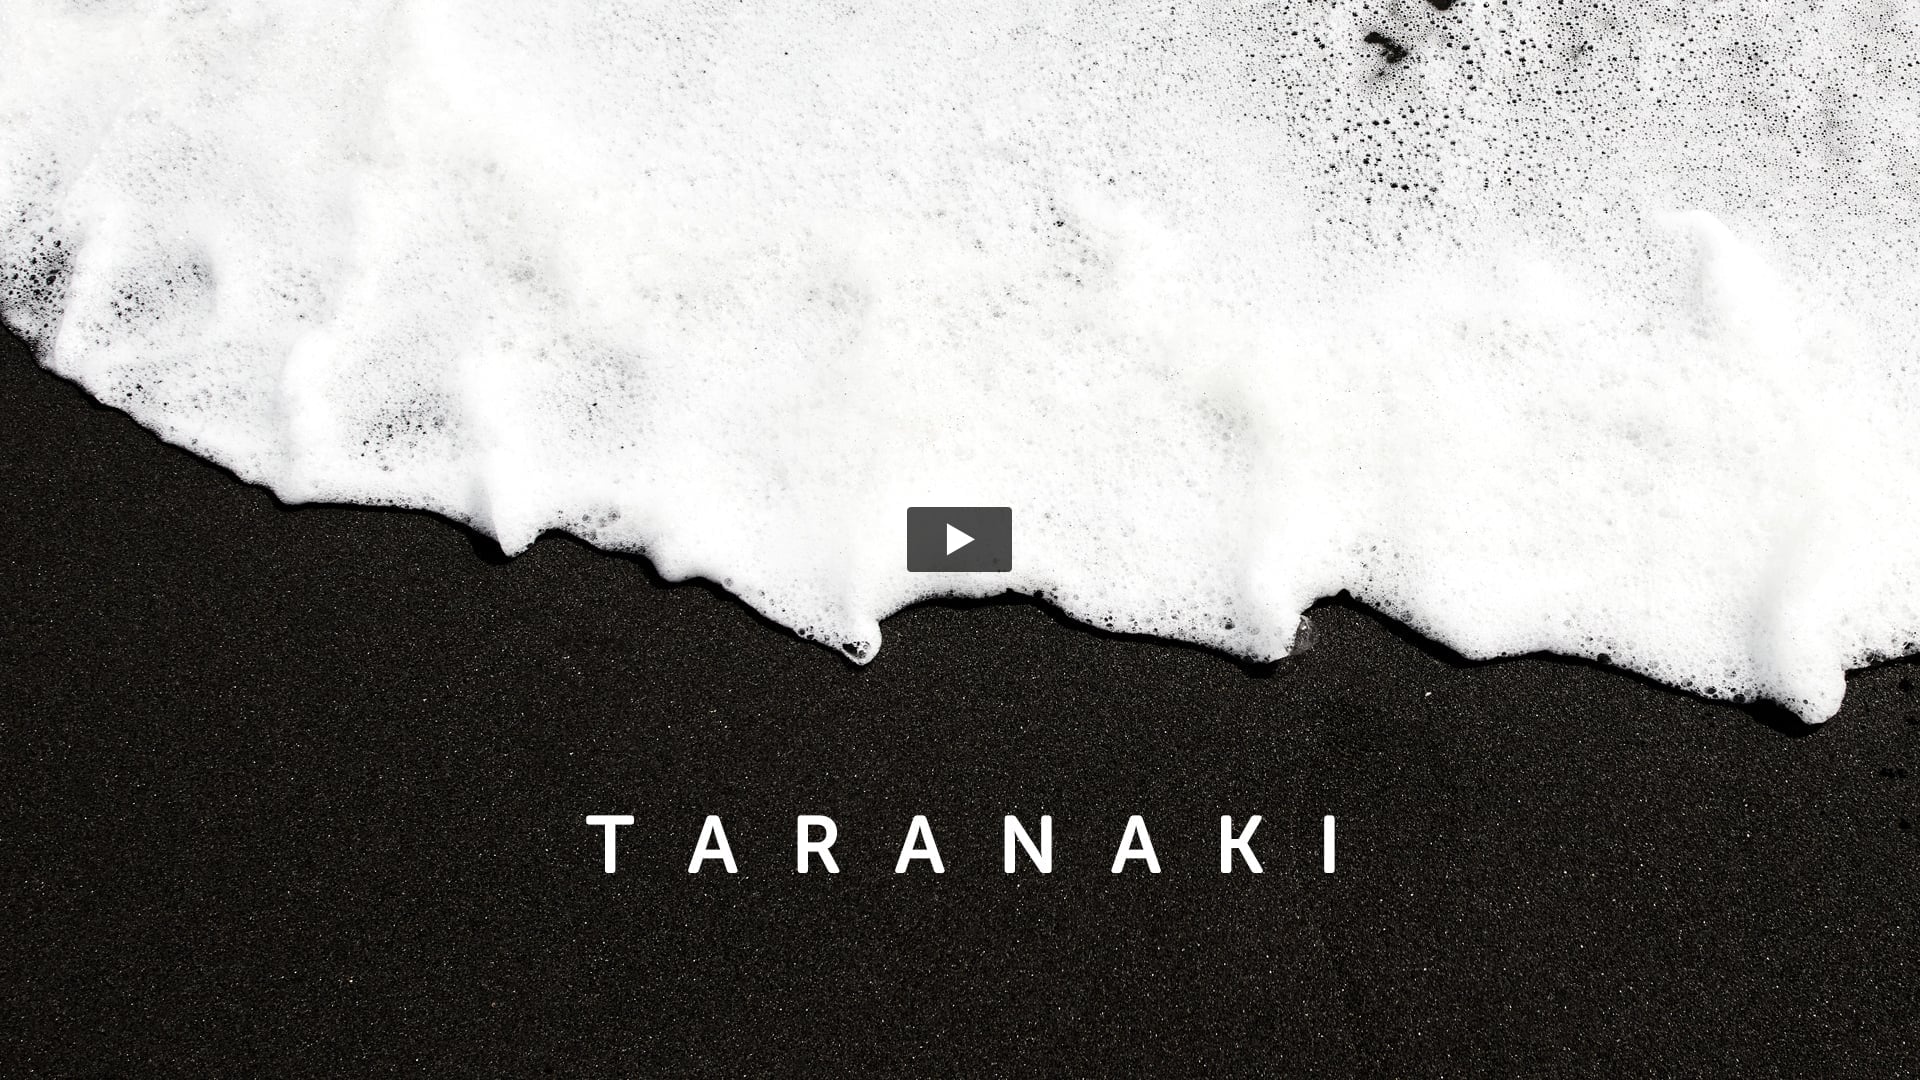 Taranaki NZ